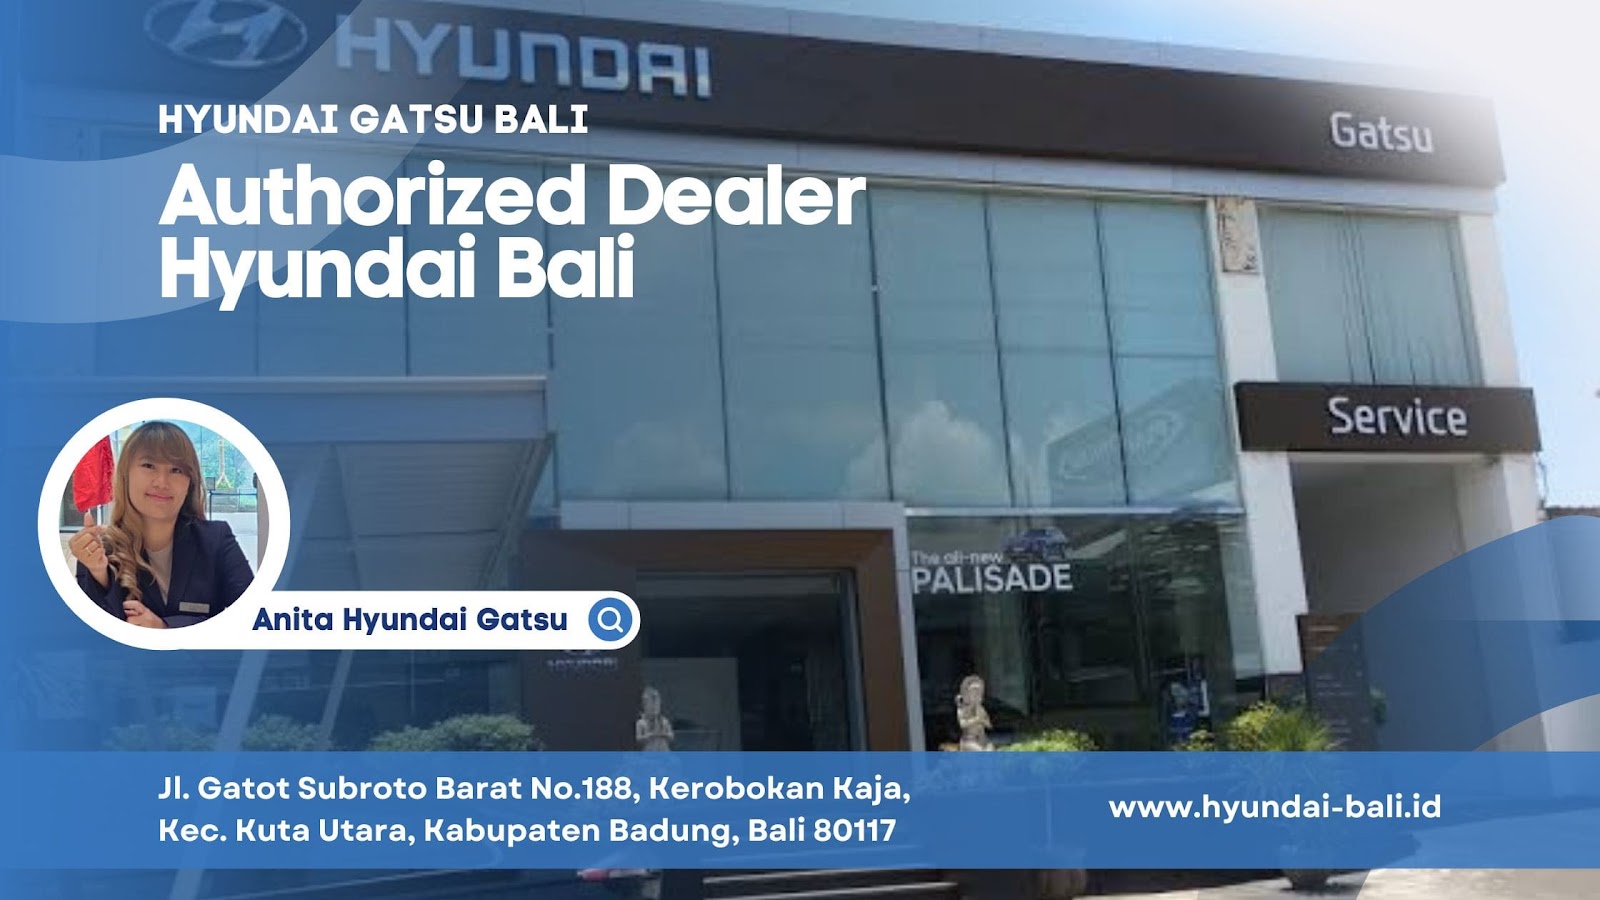 Hyundai Gatsu Bali